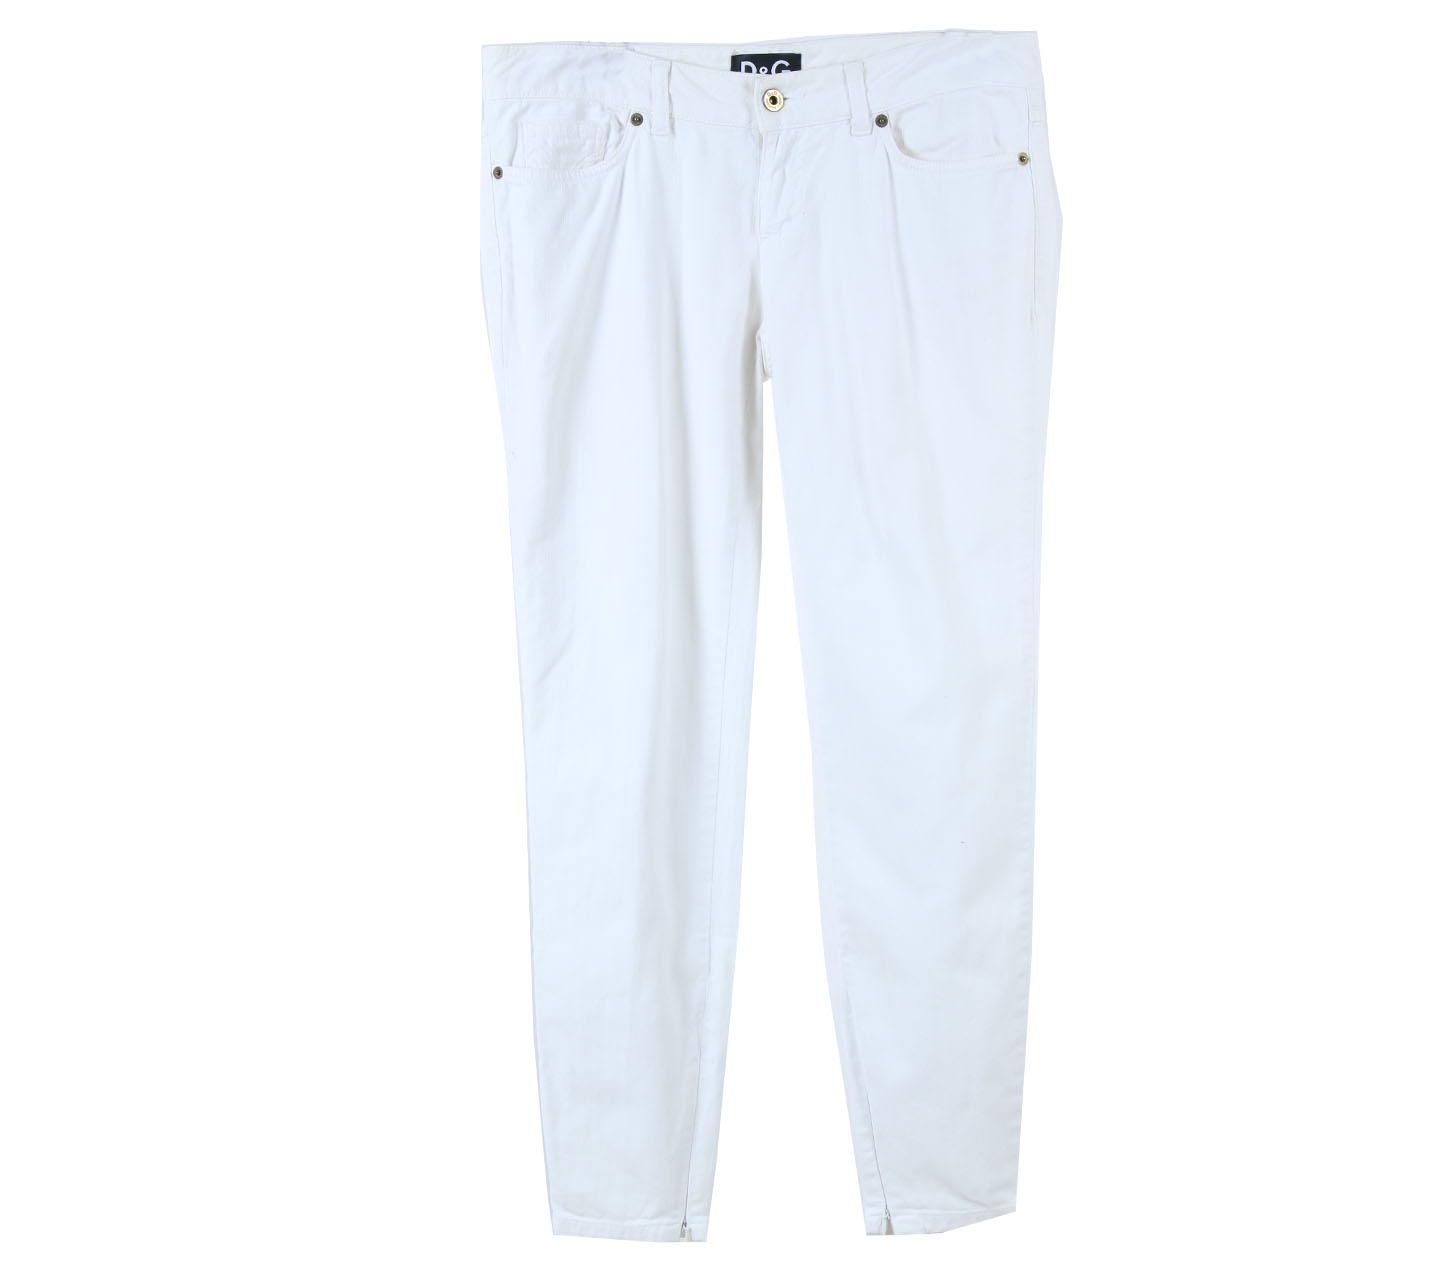 D&G White Pants